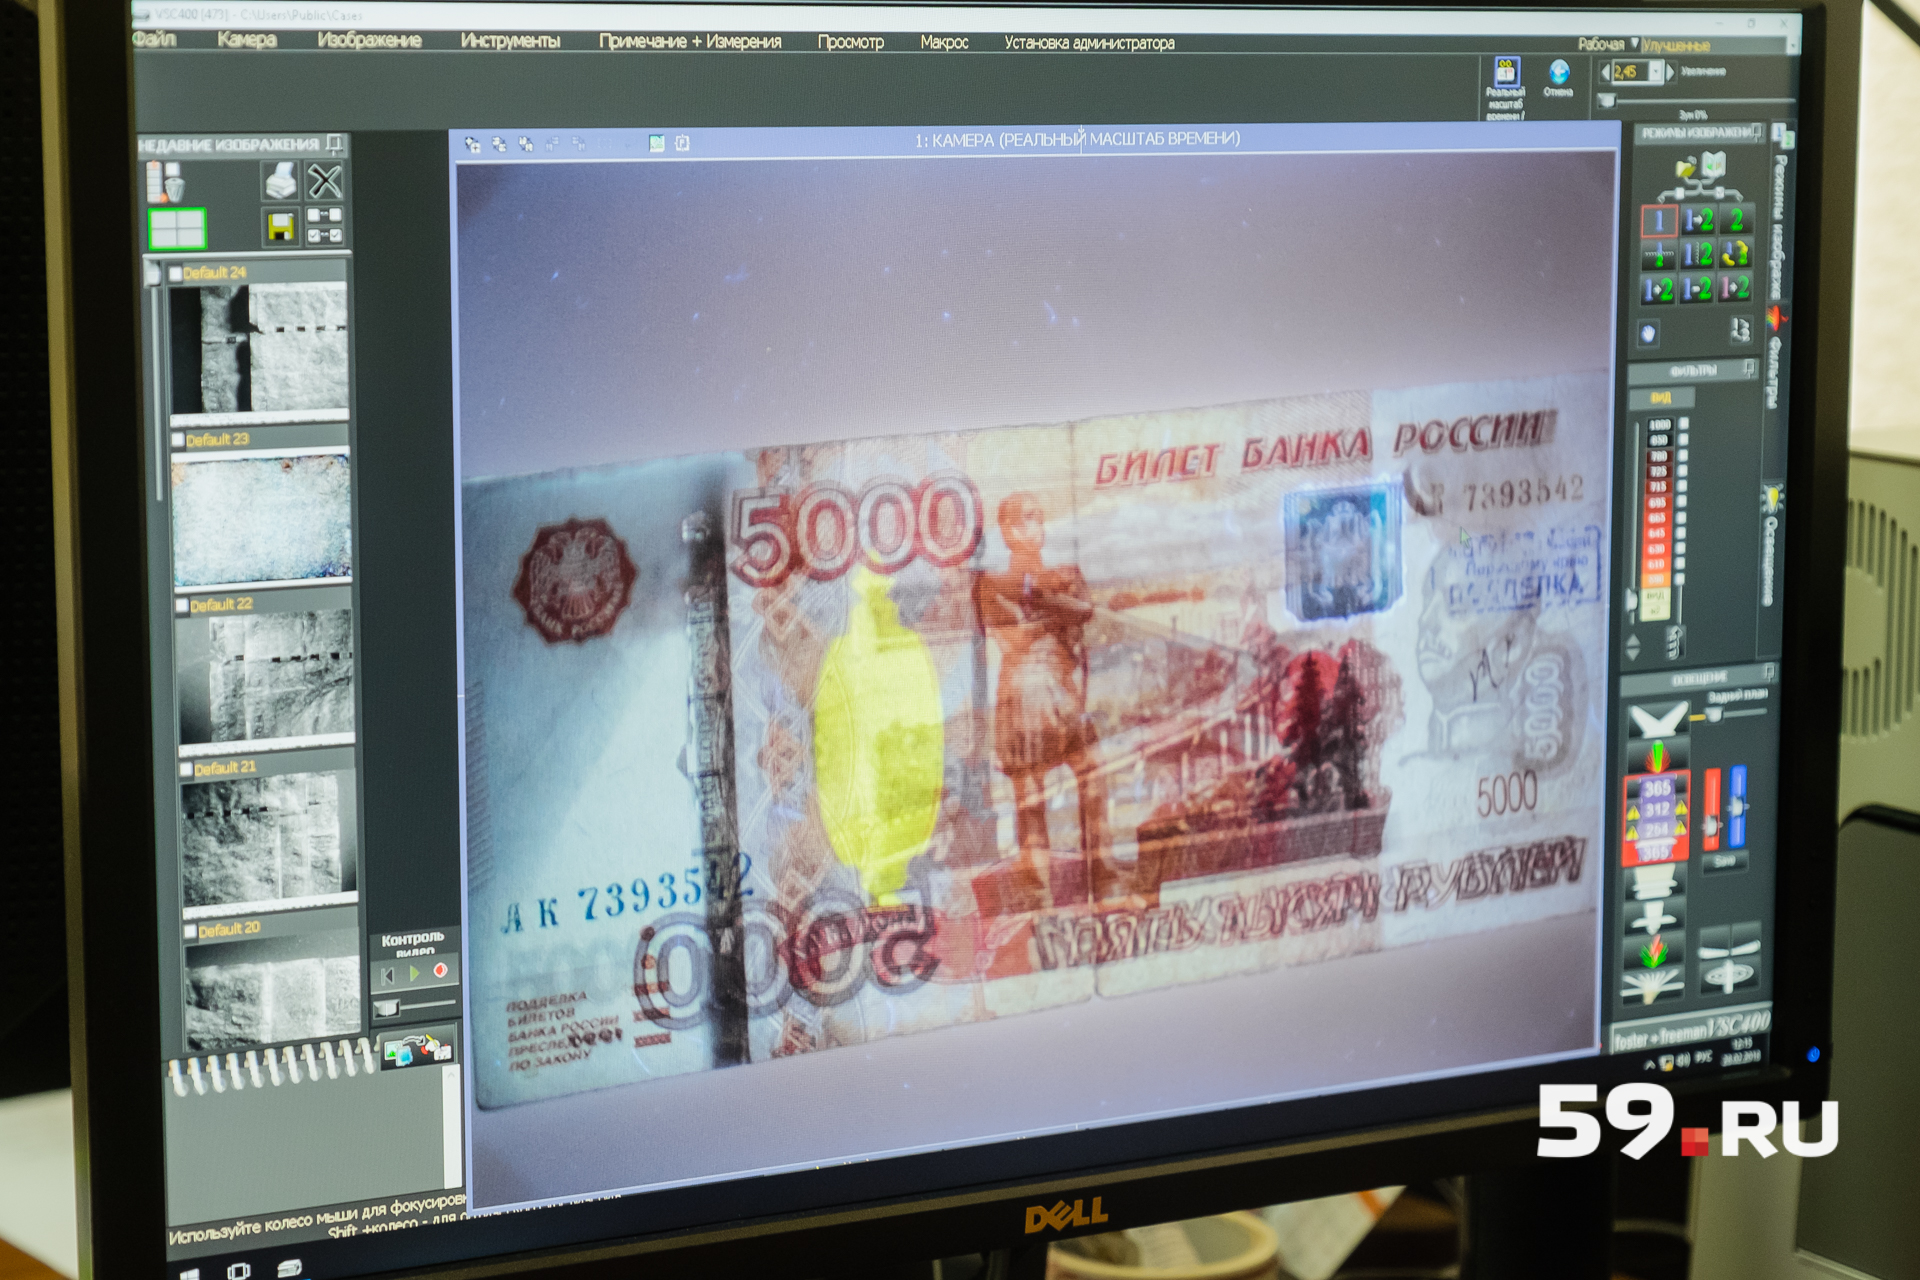 Фальшивые банкноты исследуют с помощью специального оборудования